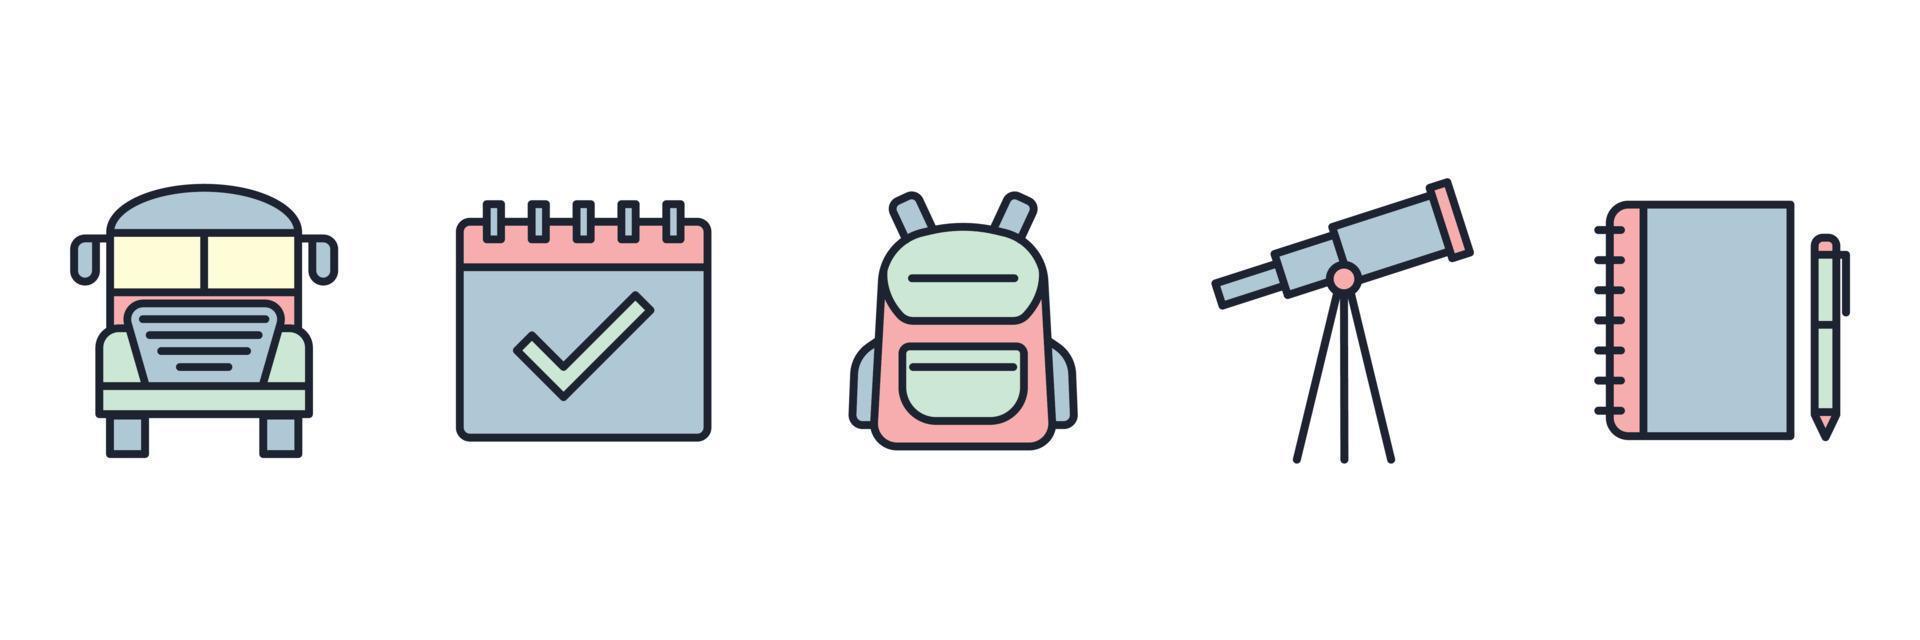 acadêmico. modelo de símbolo de ícone de conjunto de escola e educação para ilustração em vetor de logotipo de coleção de design gráfico e web